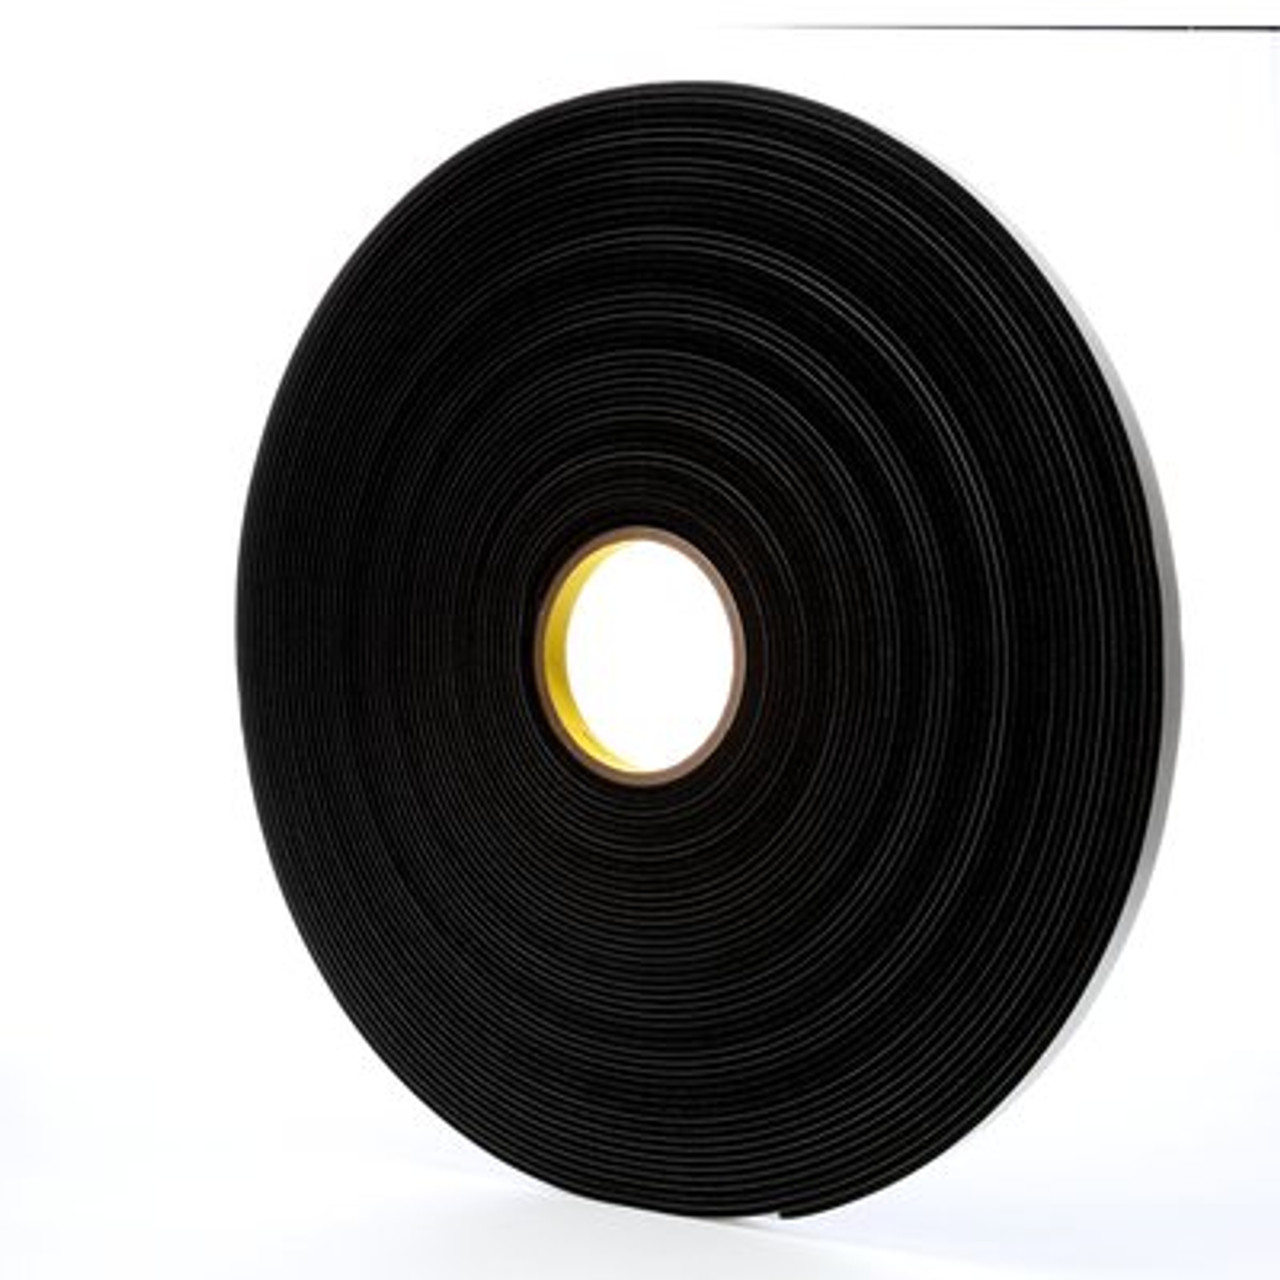 3M™ Vinyl Foam Tape 4508, Black, 1/2 in x 36 yd, 125 mil